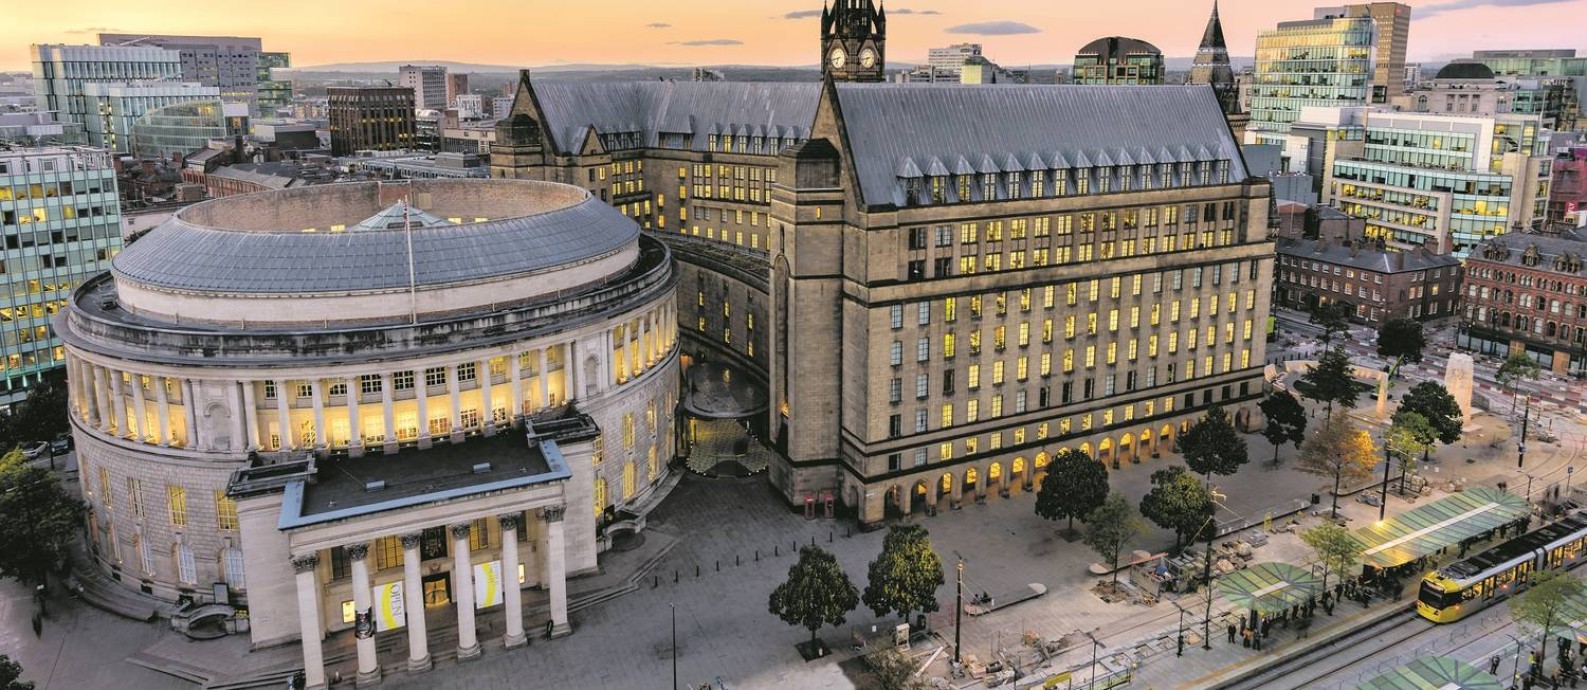 A Biblioteca Central e a prefeitura, dois dos prédios mais bonitos do elegante centro de Manchester, na Inglaterra Foto: Richard John Jones / Visit Britain / Divulgação